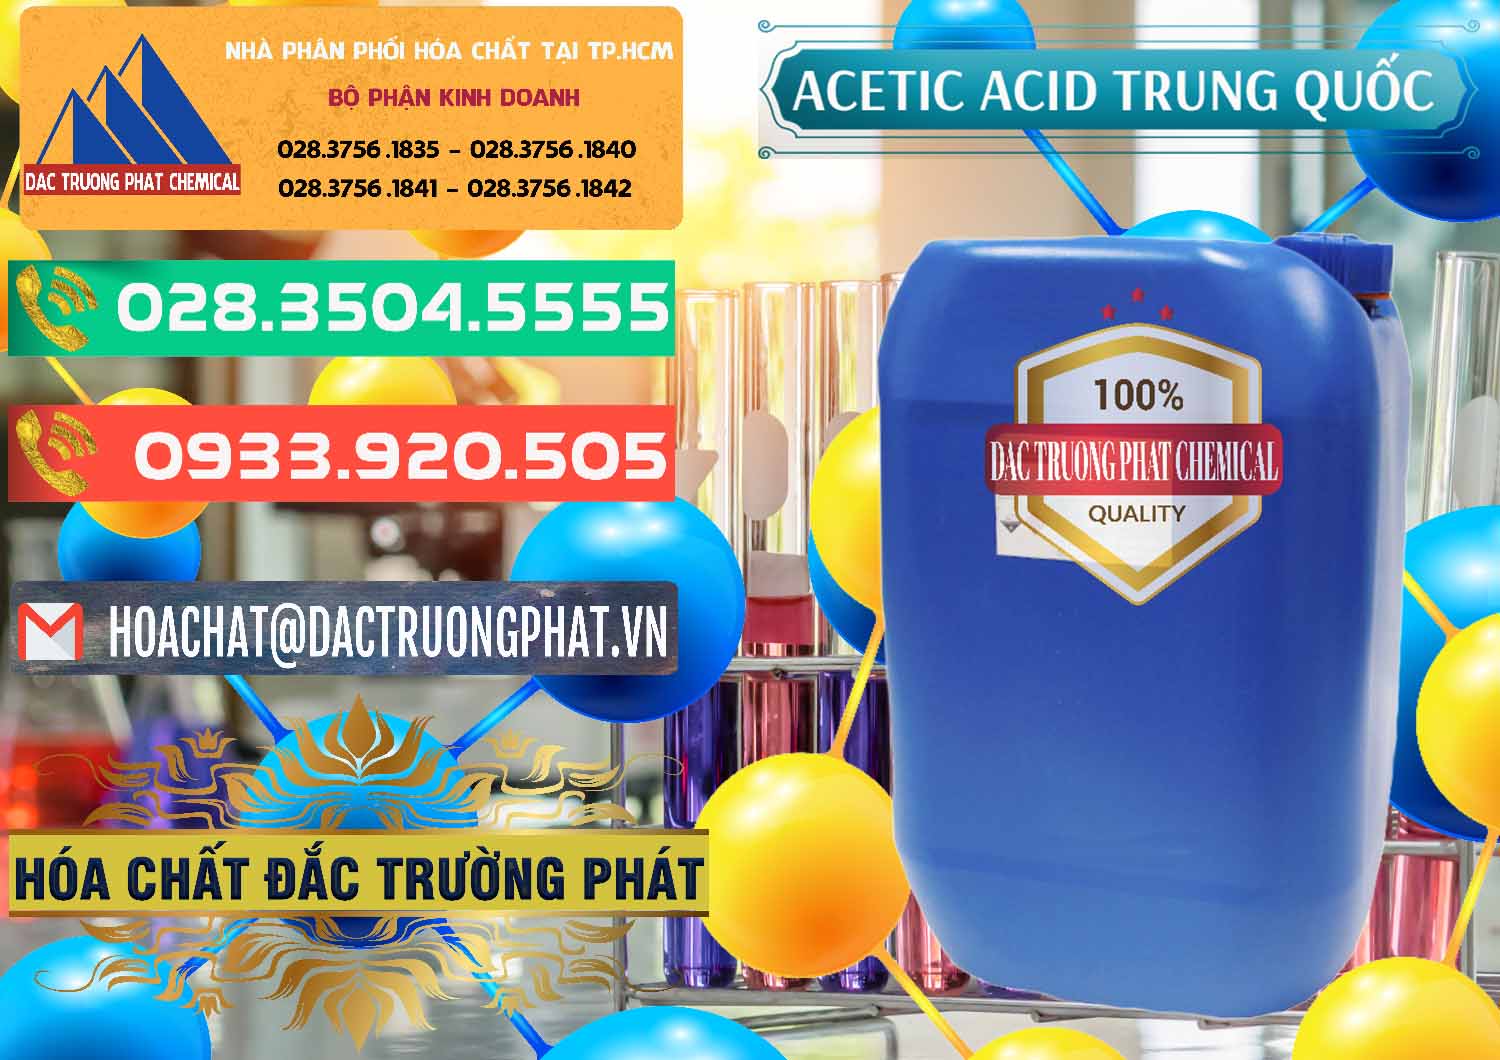 Nơi chuyên cung ứng & bán Acetic Acid – Axit Acetic Trung Quốc China - 0358 - Công ty nhập khẩu & cung cấp hóa chất tại TP.HCM - congtyhoachat.com.vn